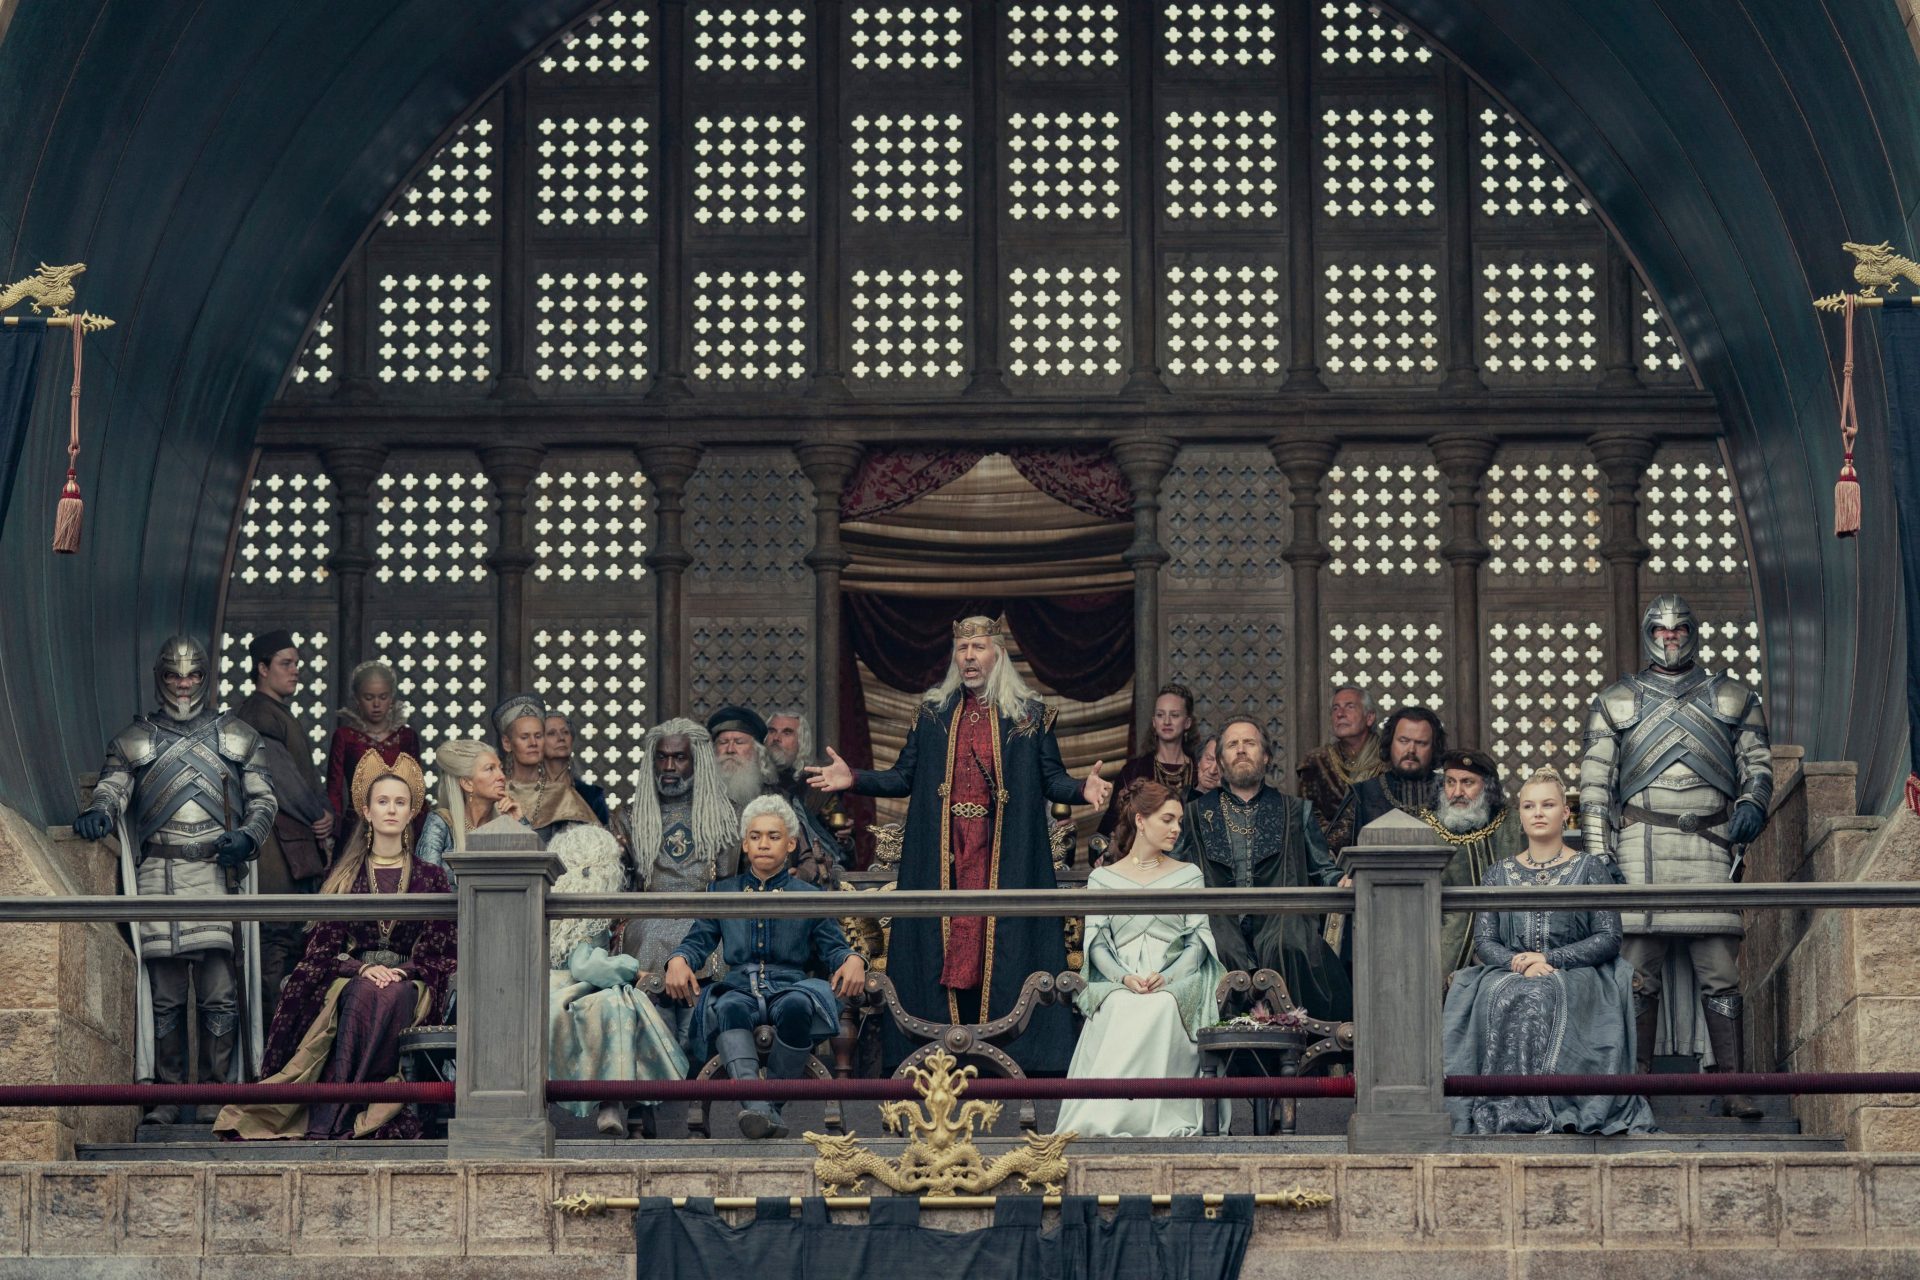 Opowieści z Siedmiu Królestw gra o tron serial kiedy premiera